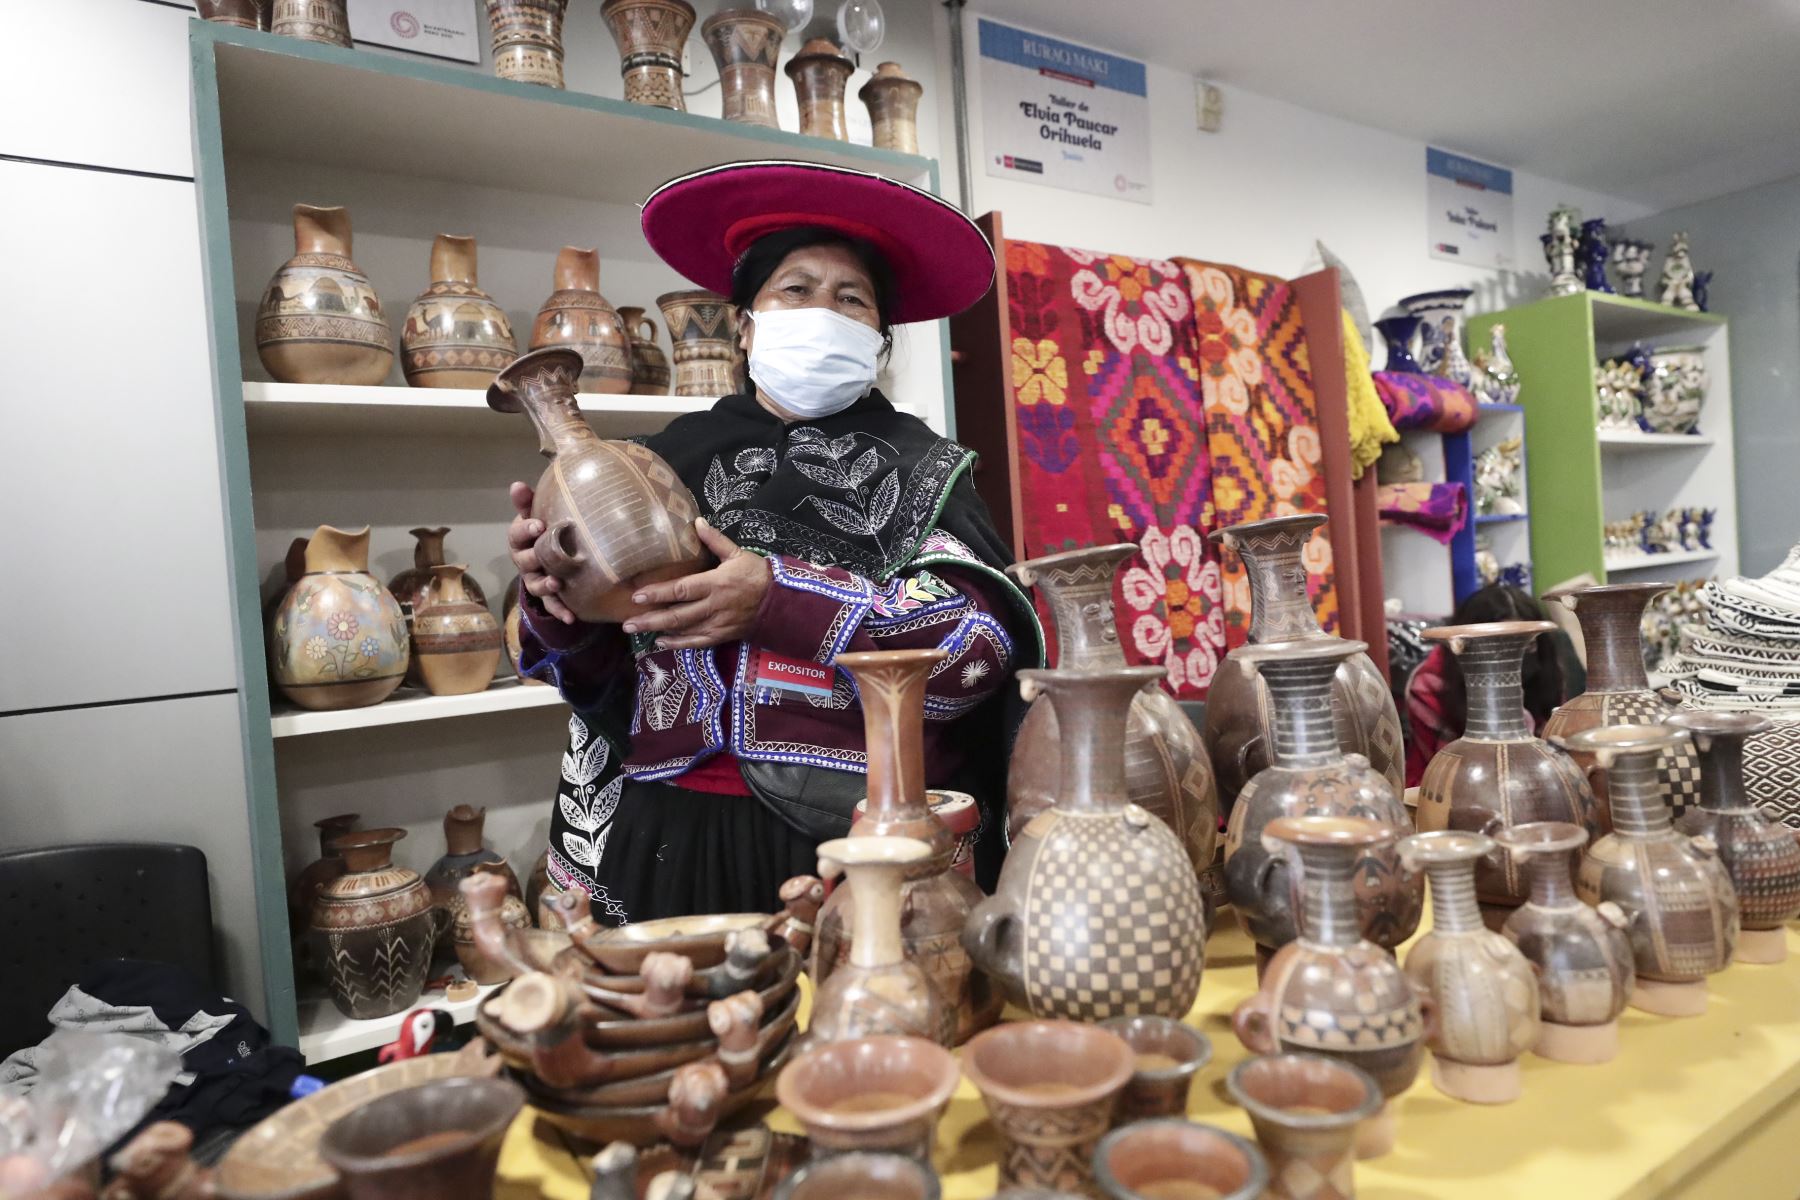 Ministerio de Cultura reunirá, desde este jueves 8, a artesanos y artistas tradicionales de todo el país en la edición de diciembre de Ruraq maki, hecho a mano.

Foto: ANDINA/Difusión